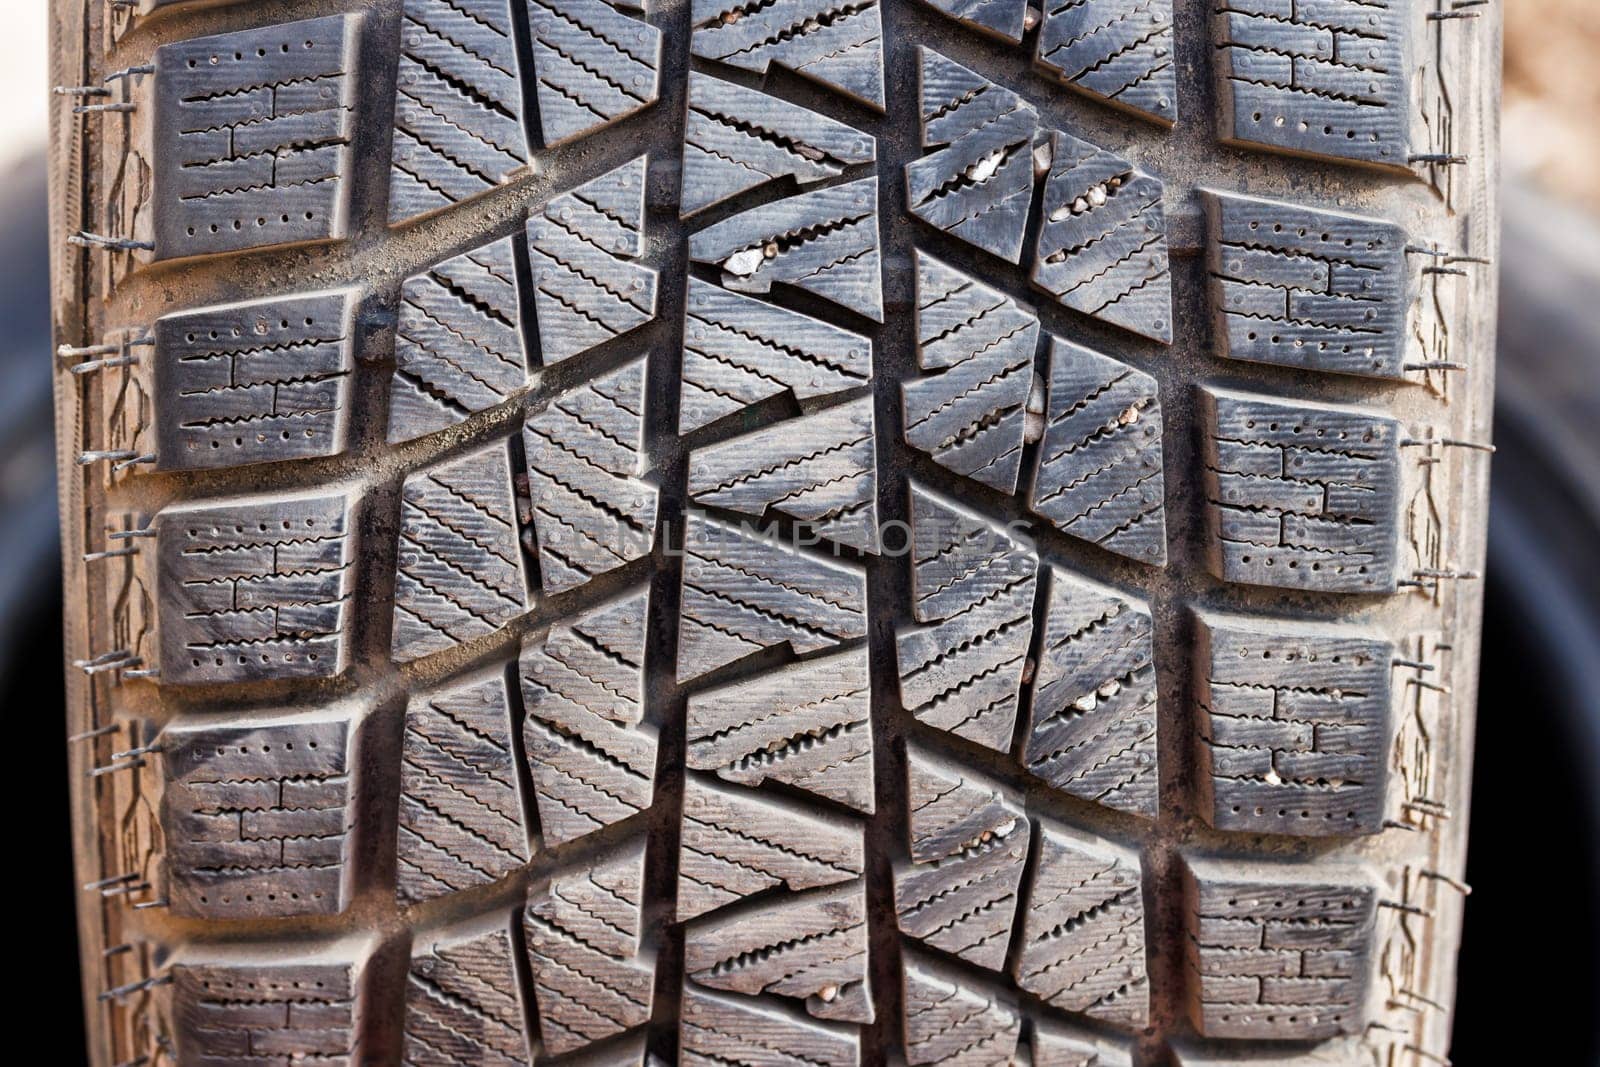 small rocks stuck in car tire tread, closeup by z1b